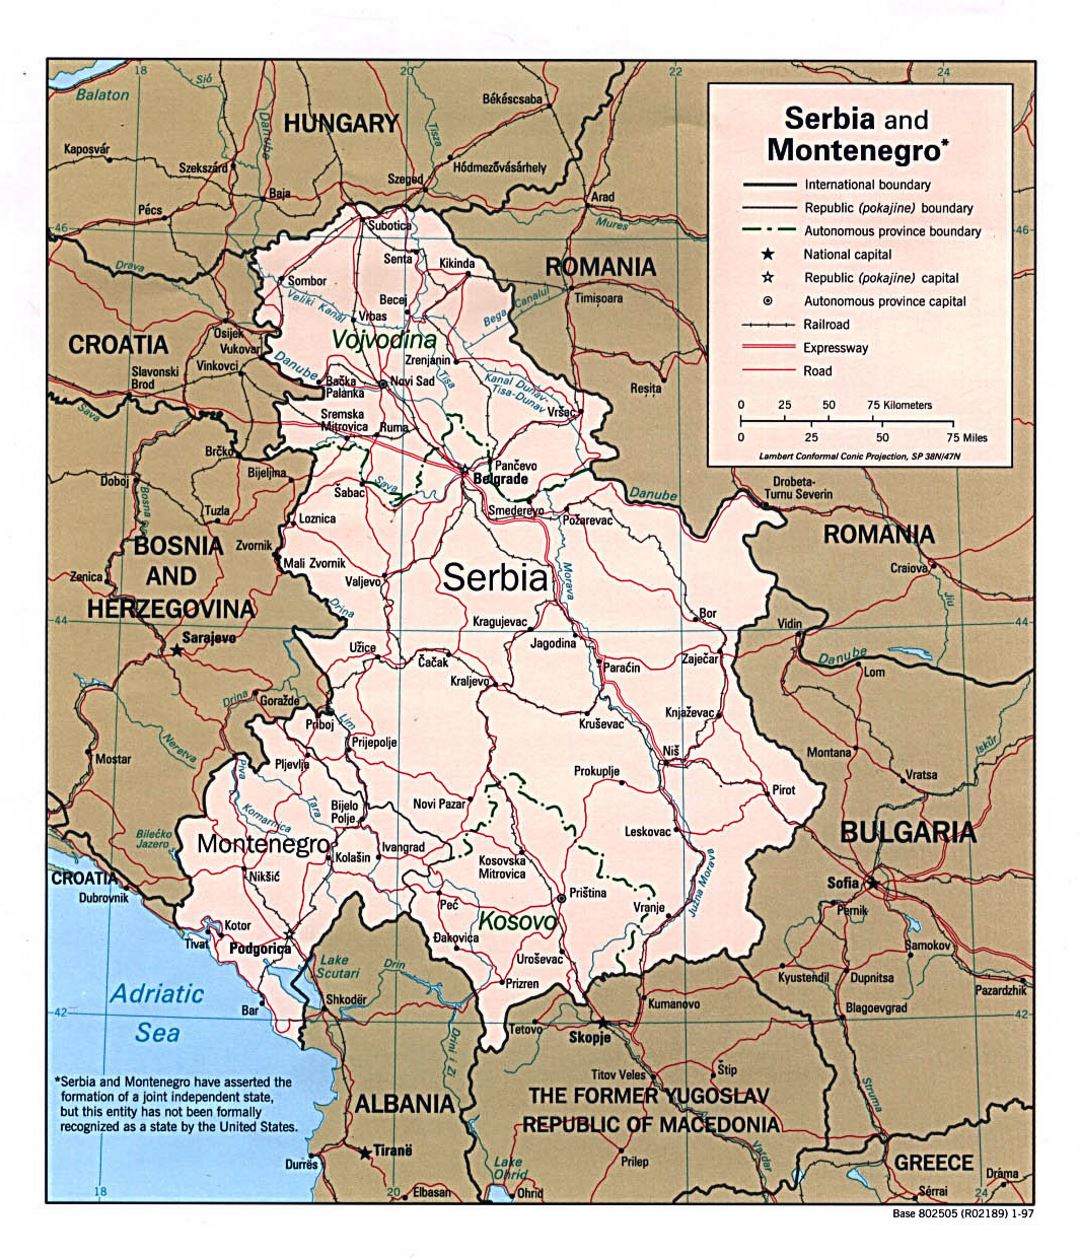 Detallado mapa político de Serbia y Montenegro - 1997